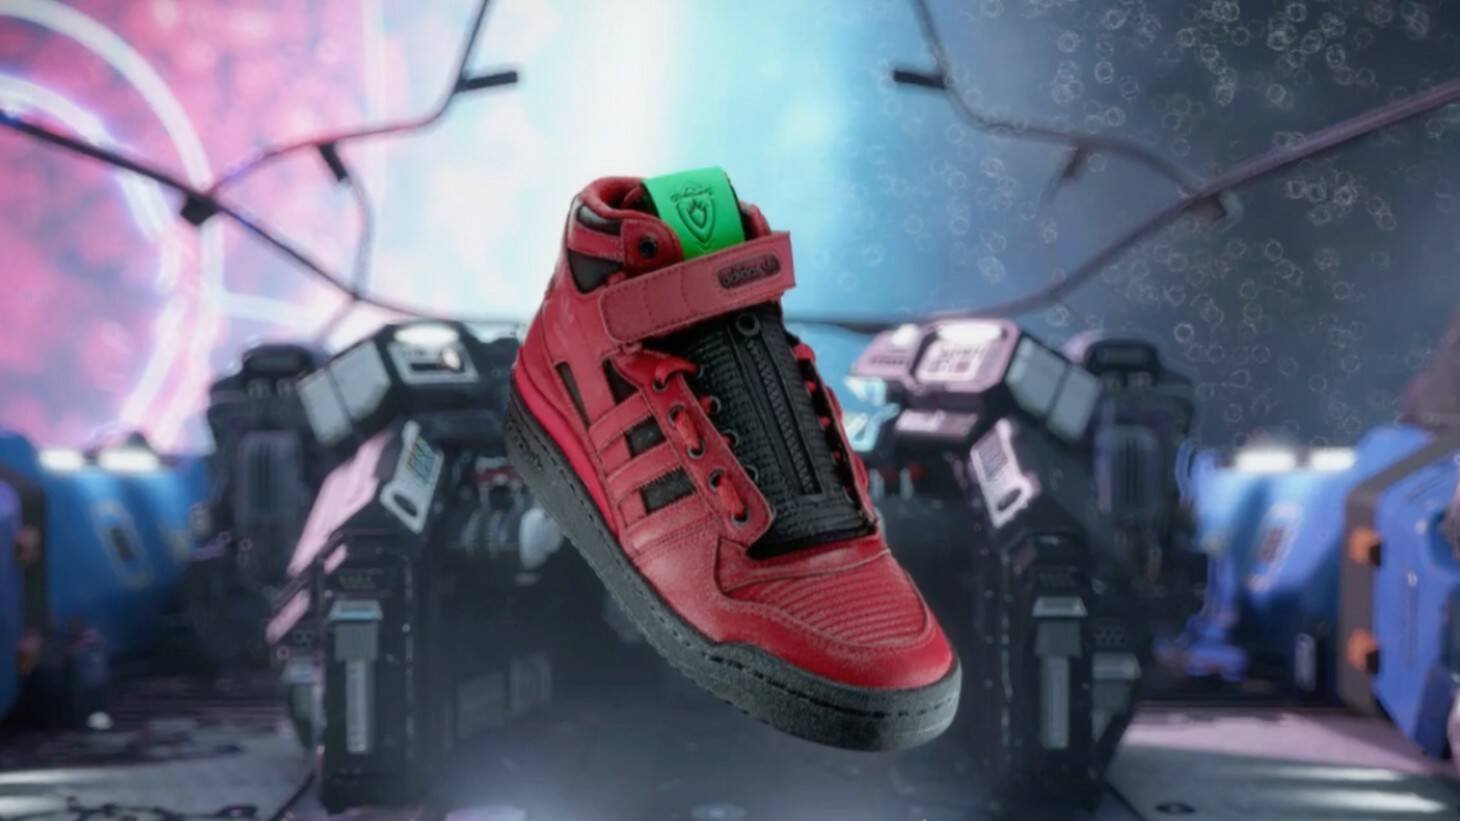 Adesso potrete avere lo stesso stile dei Guardiani della Galassia con le nuove scarpe del gioco